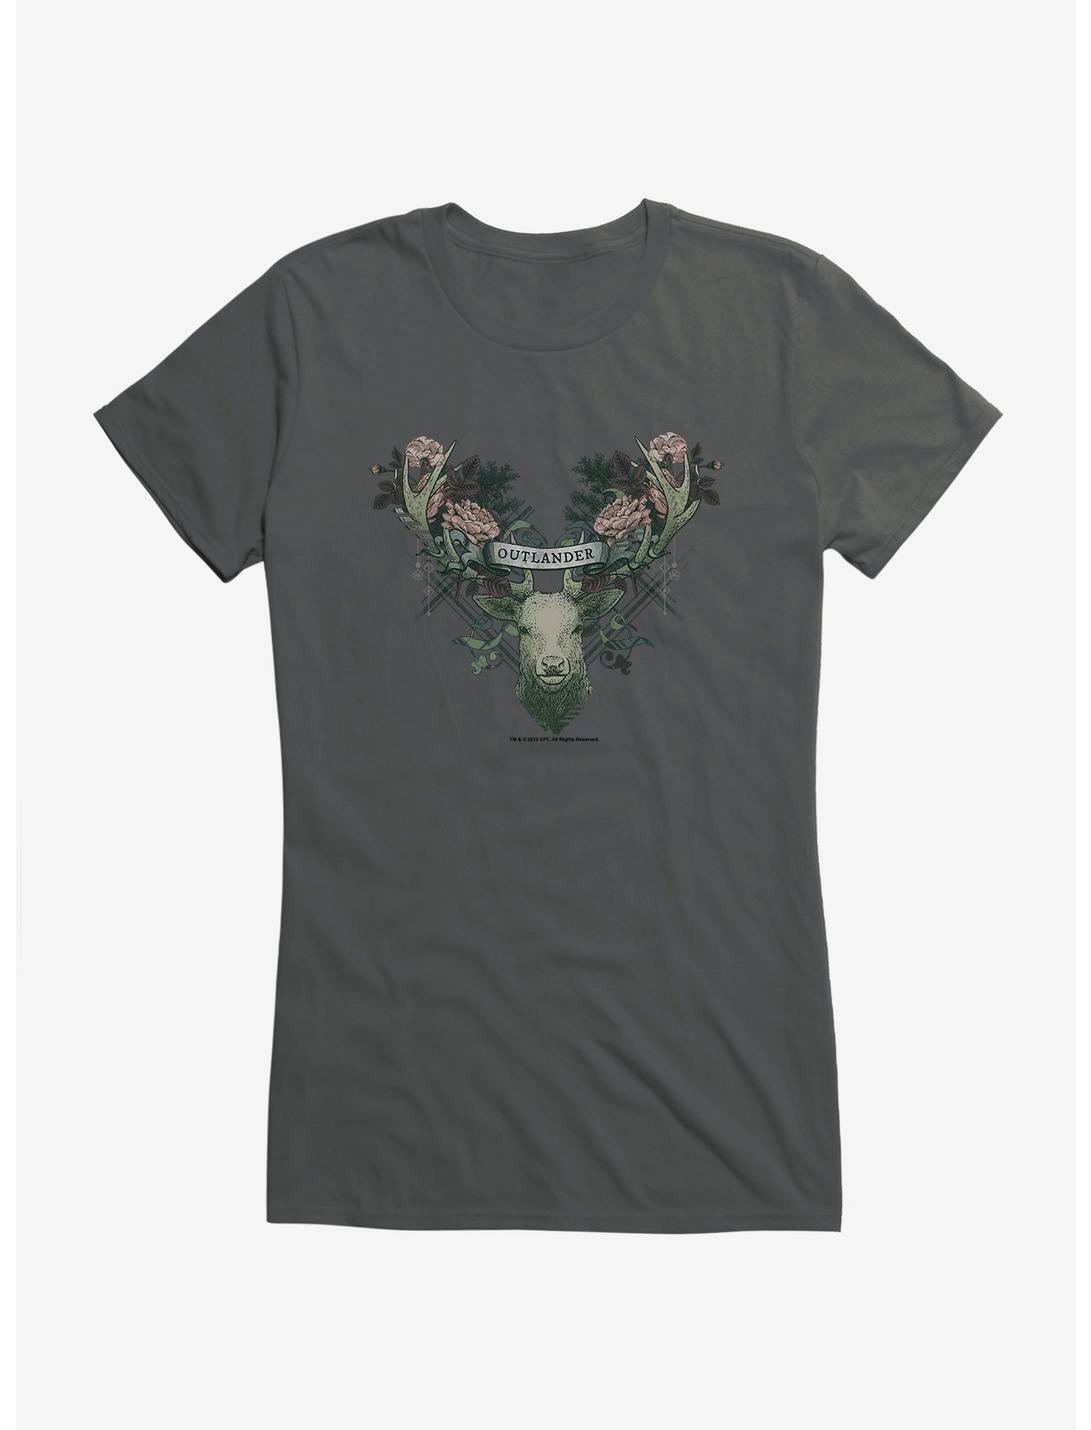 Outlander Floral Deer Girls T-Shirt, CHARCOAL, hi-res